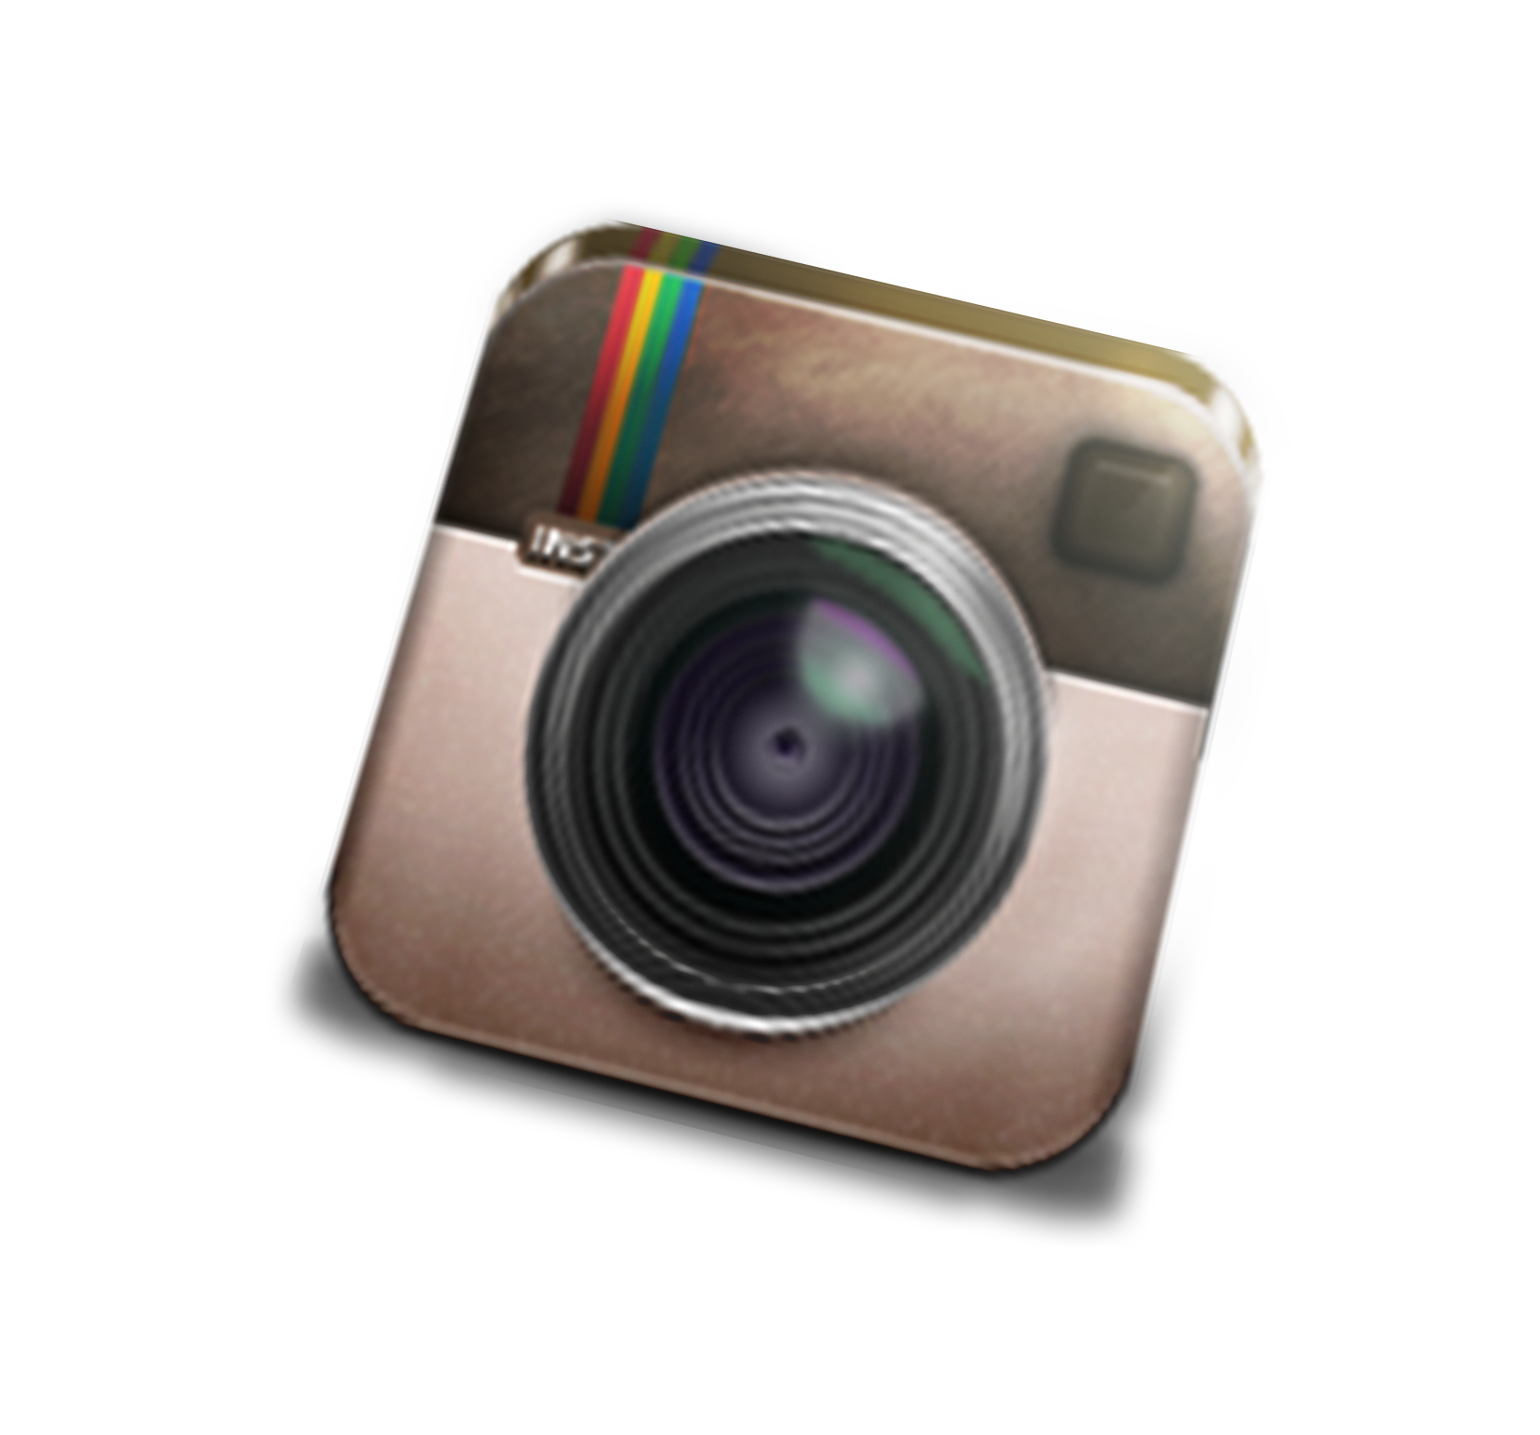 3d instagram logo png